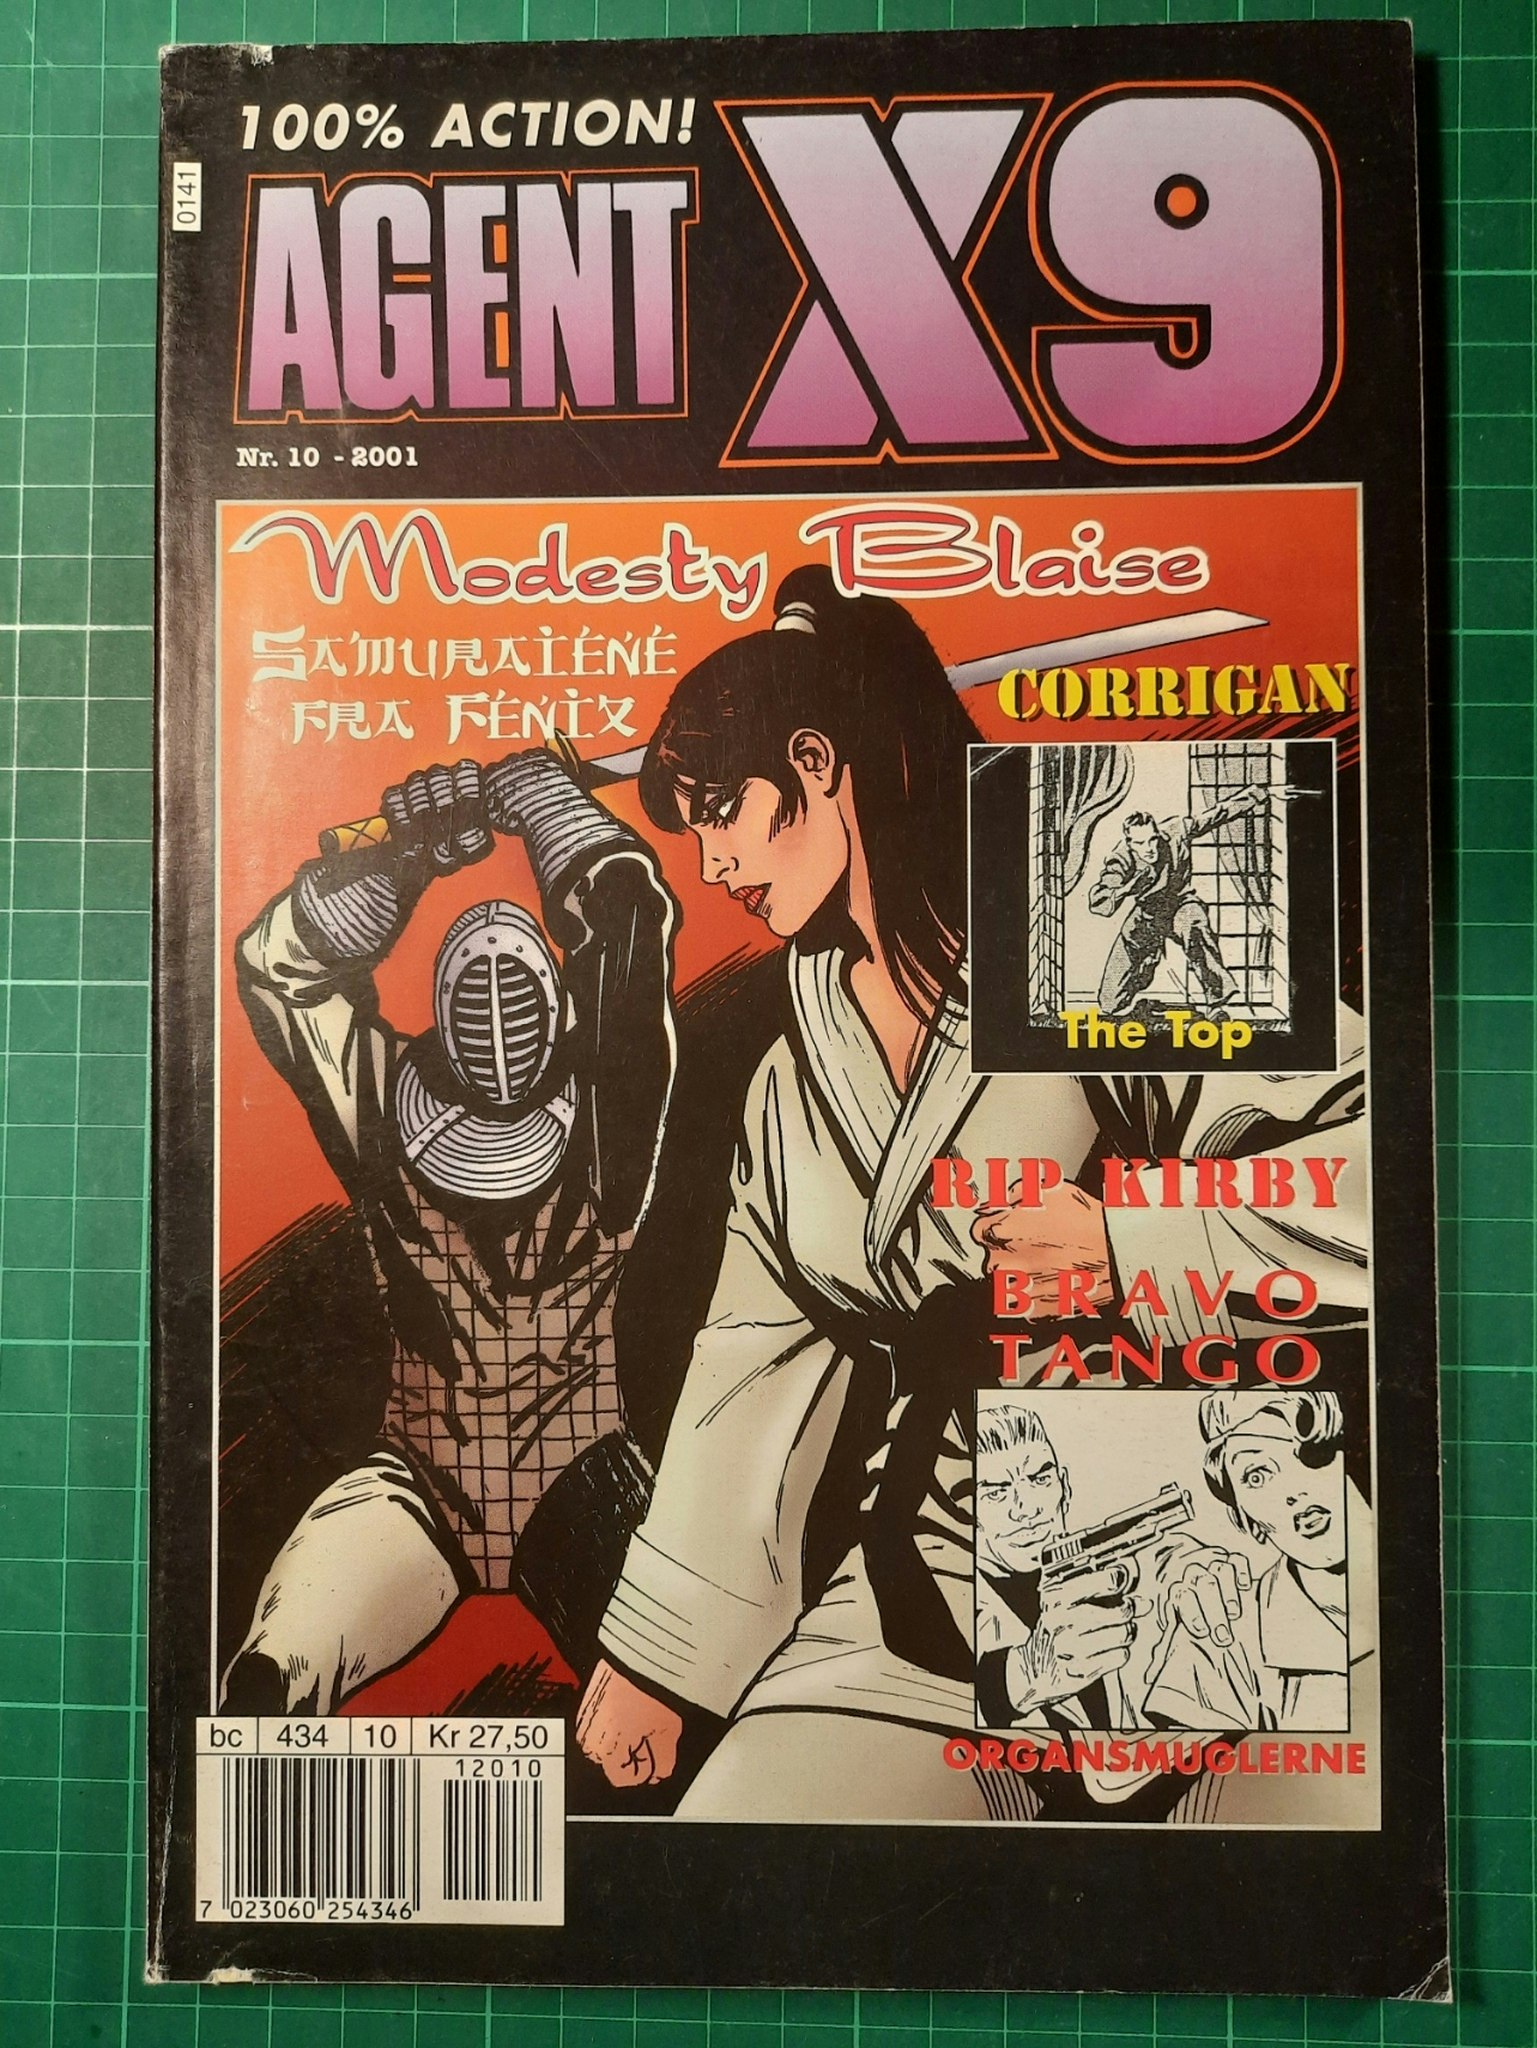 Agent X9 2001-10